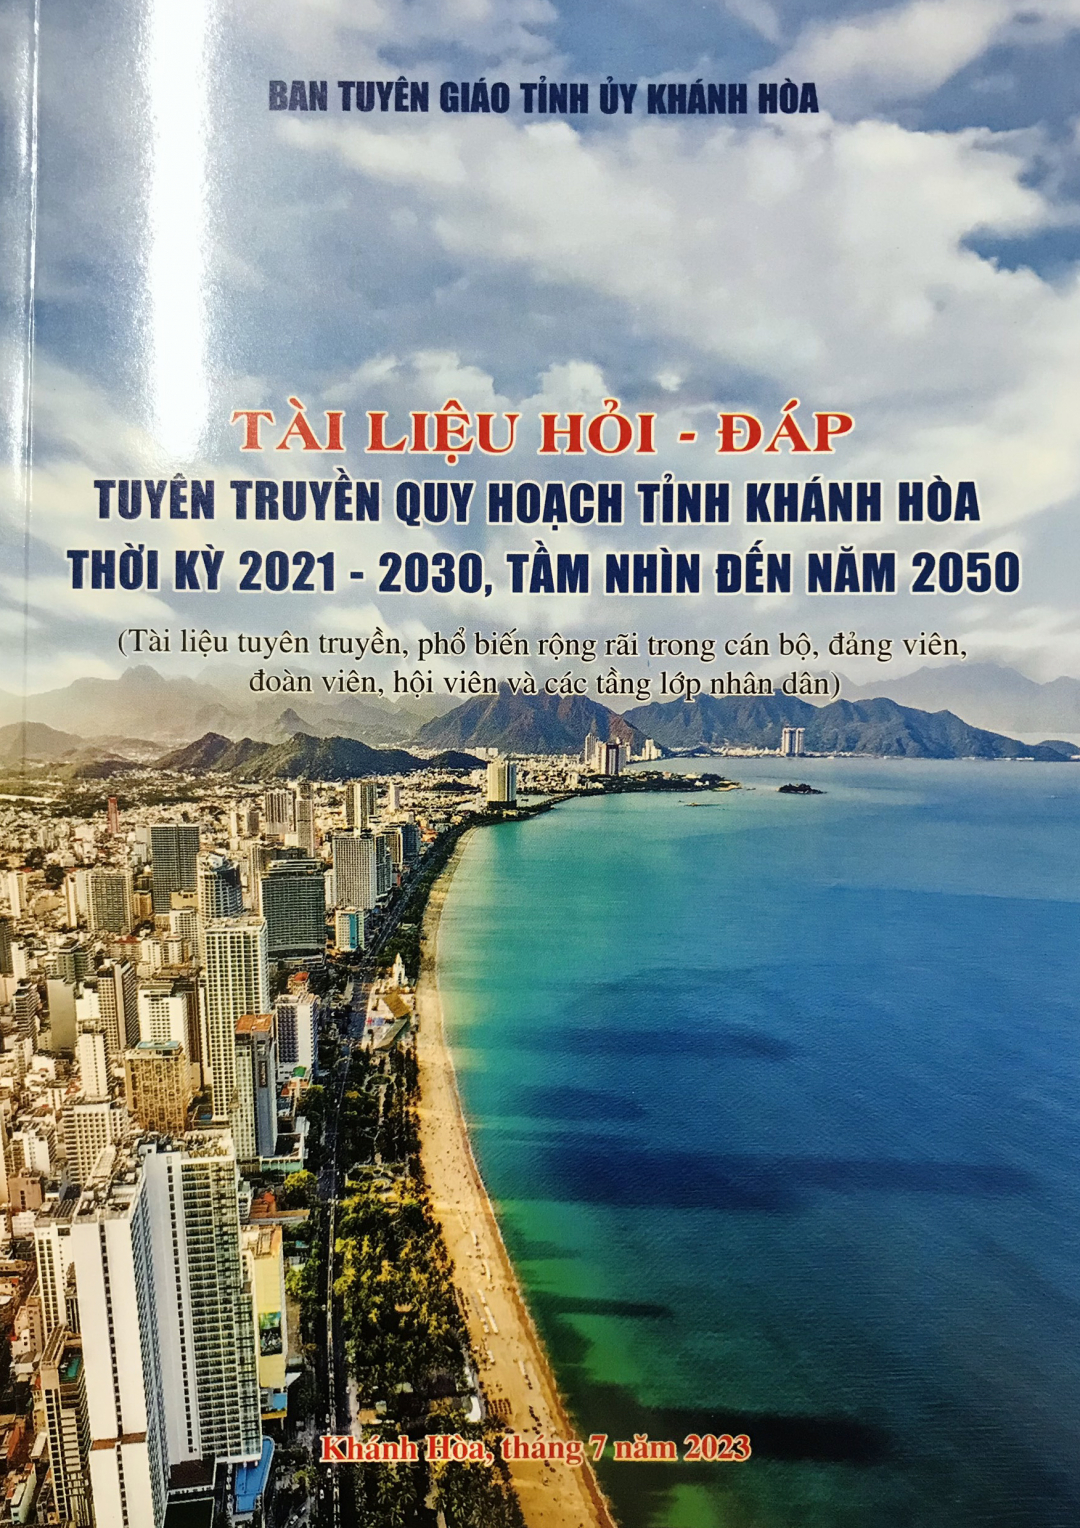 Những điều cần biết về Quy hoạch tỉnh Khánh Hòa thời kỳ 2021 - 2030, tầm nhìn đến năm 2050